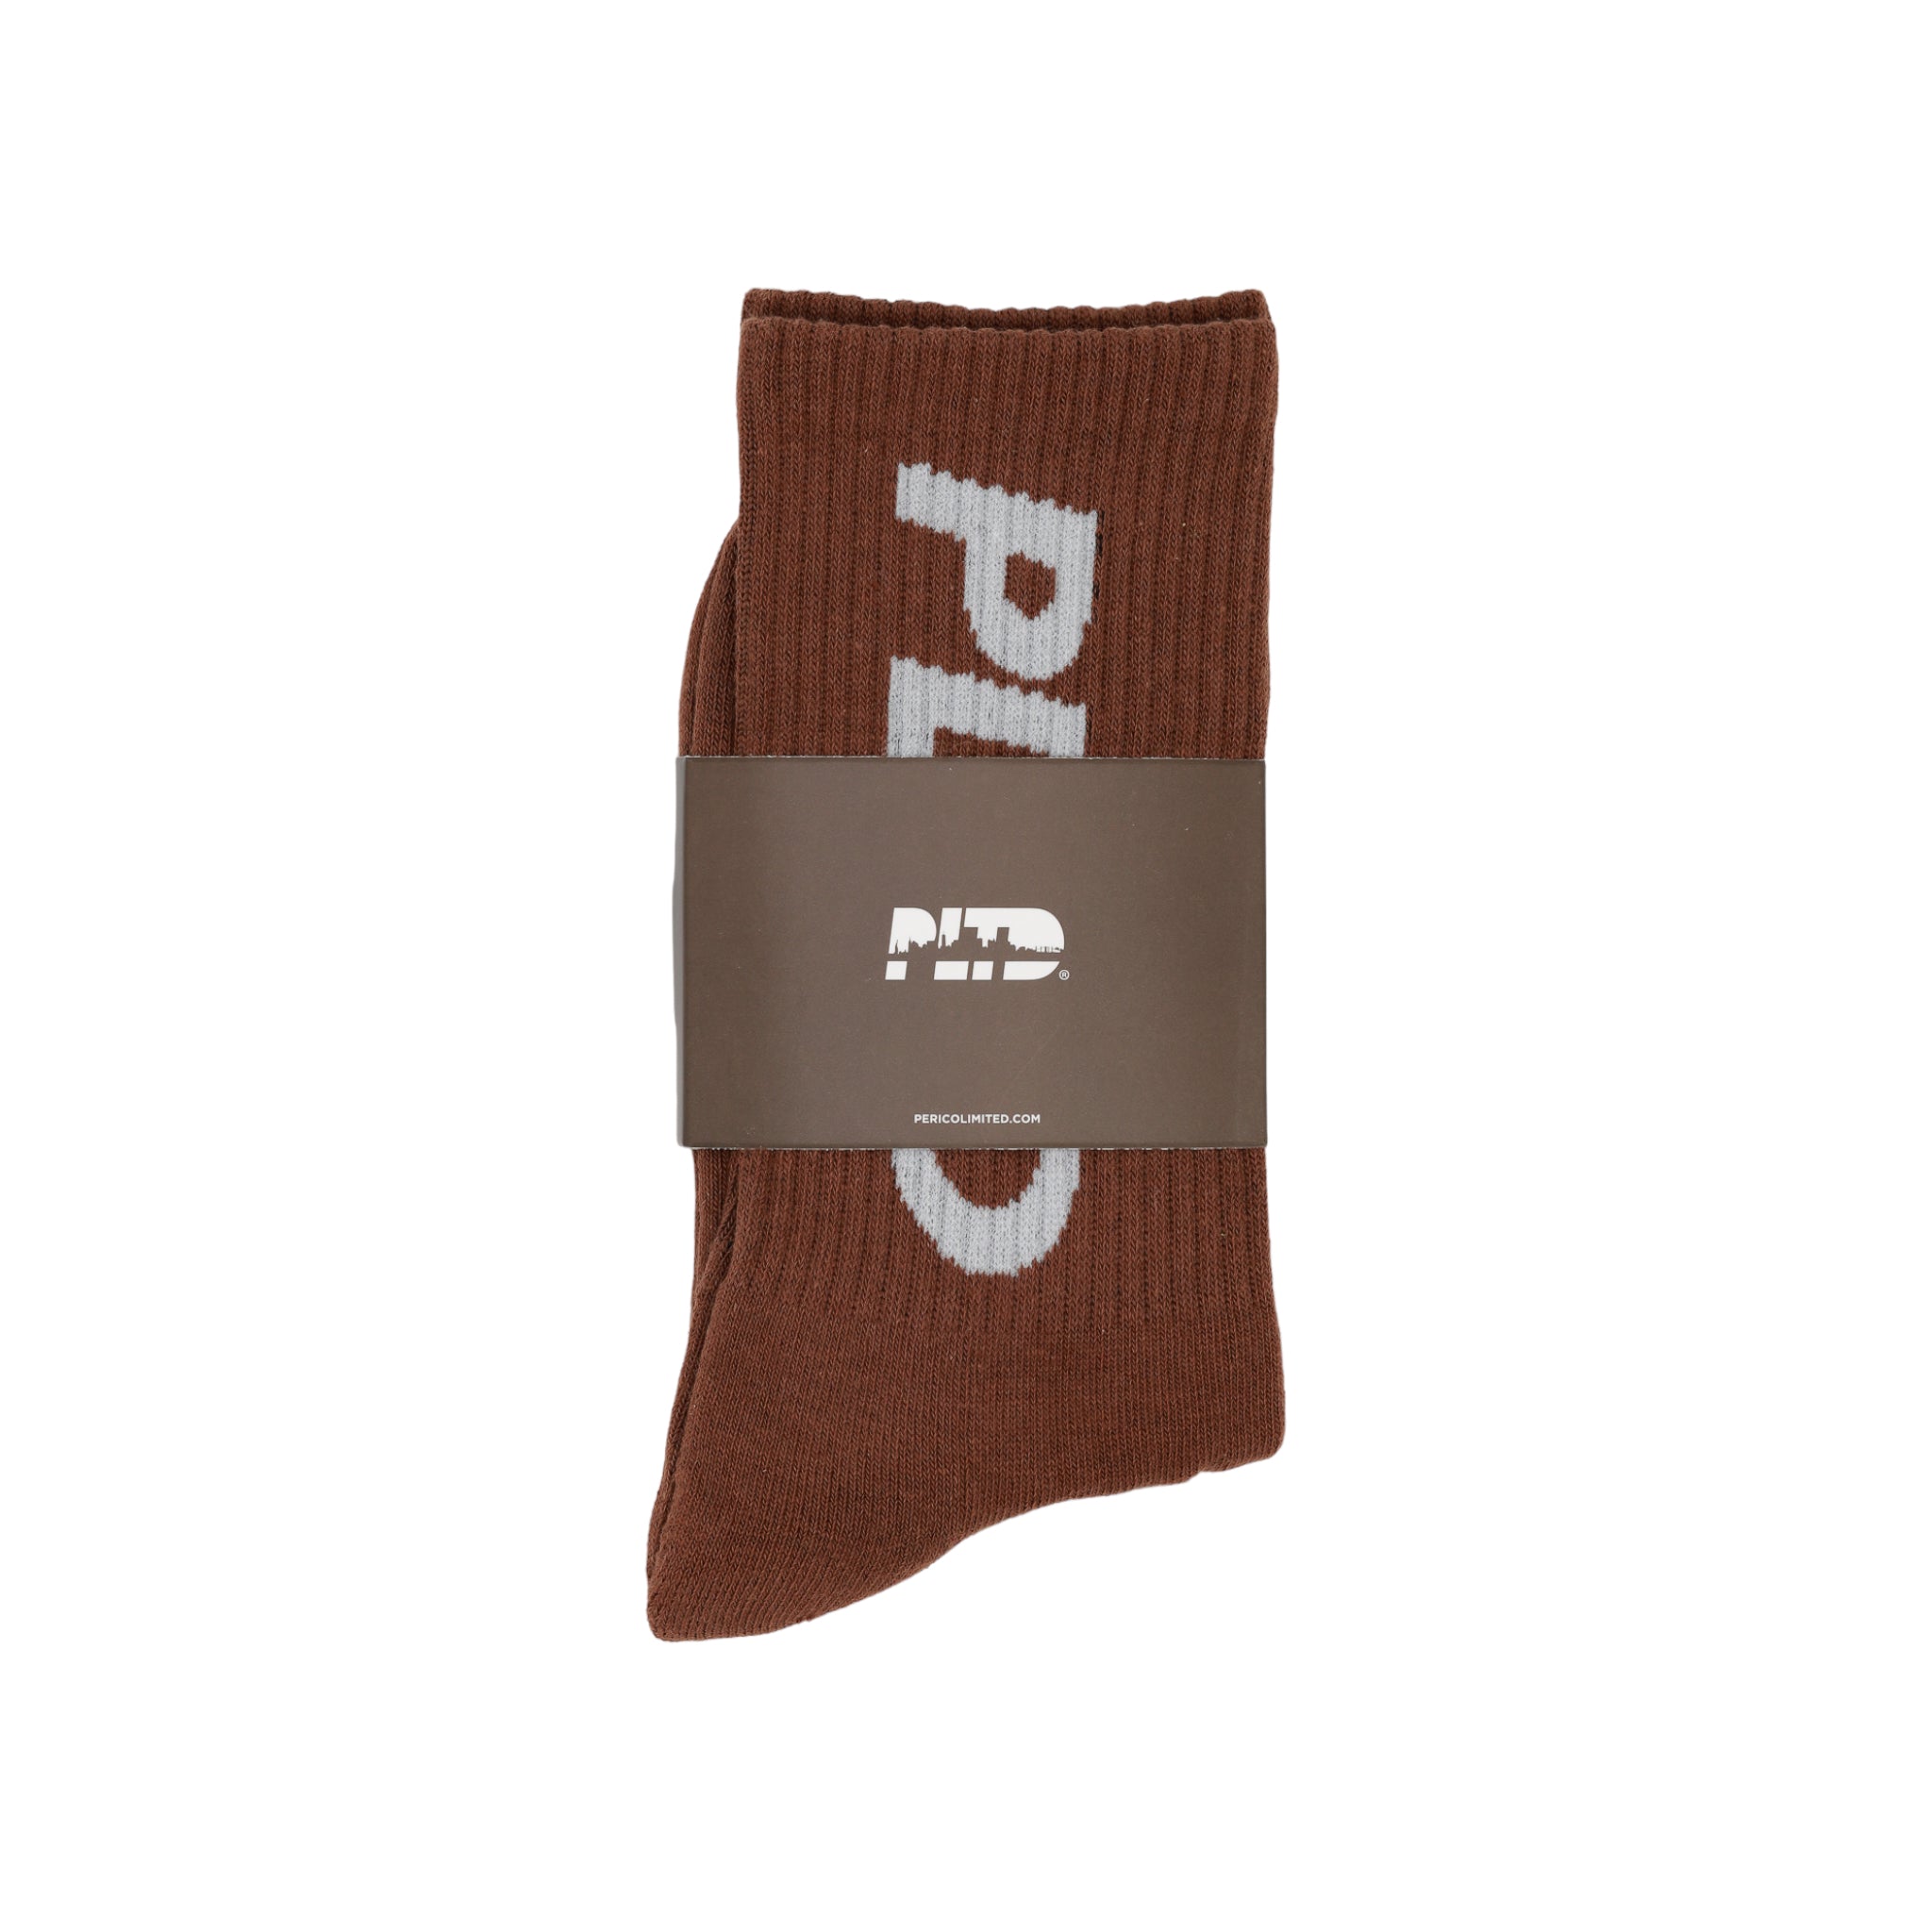 Team PLTD - Toffee Terry Cloth Socks